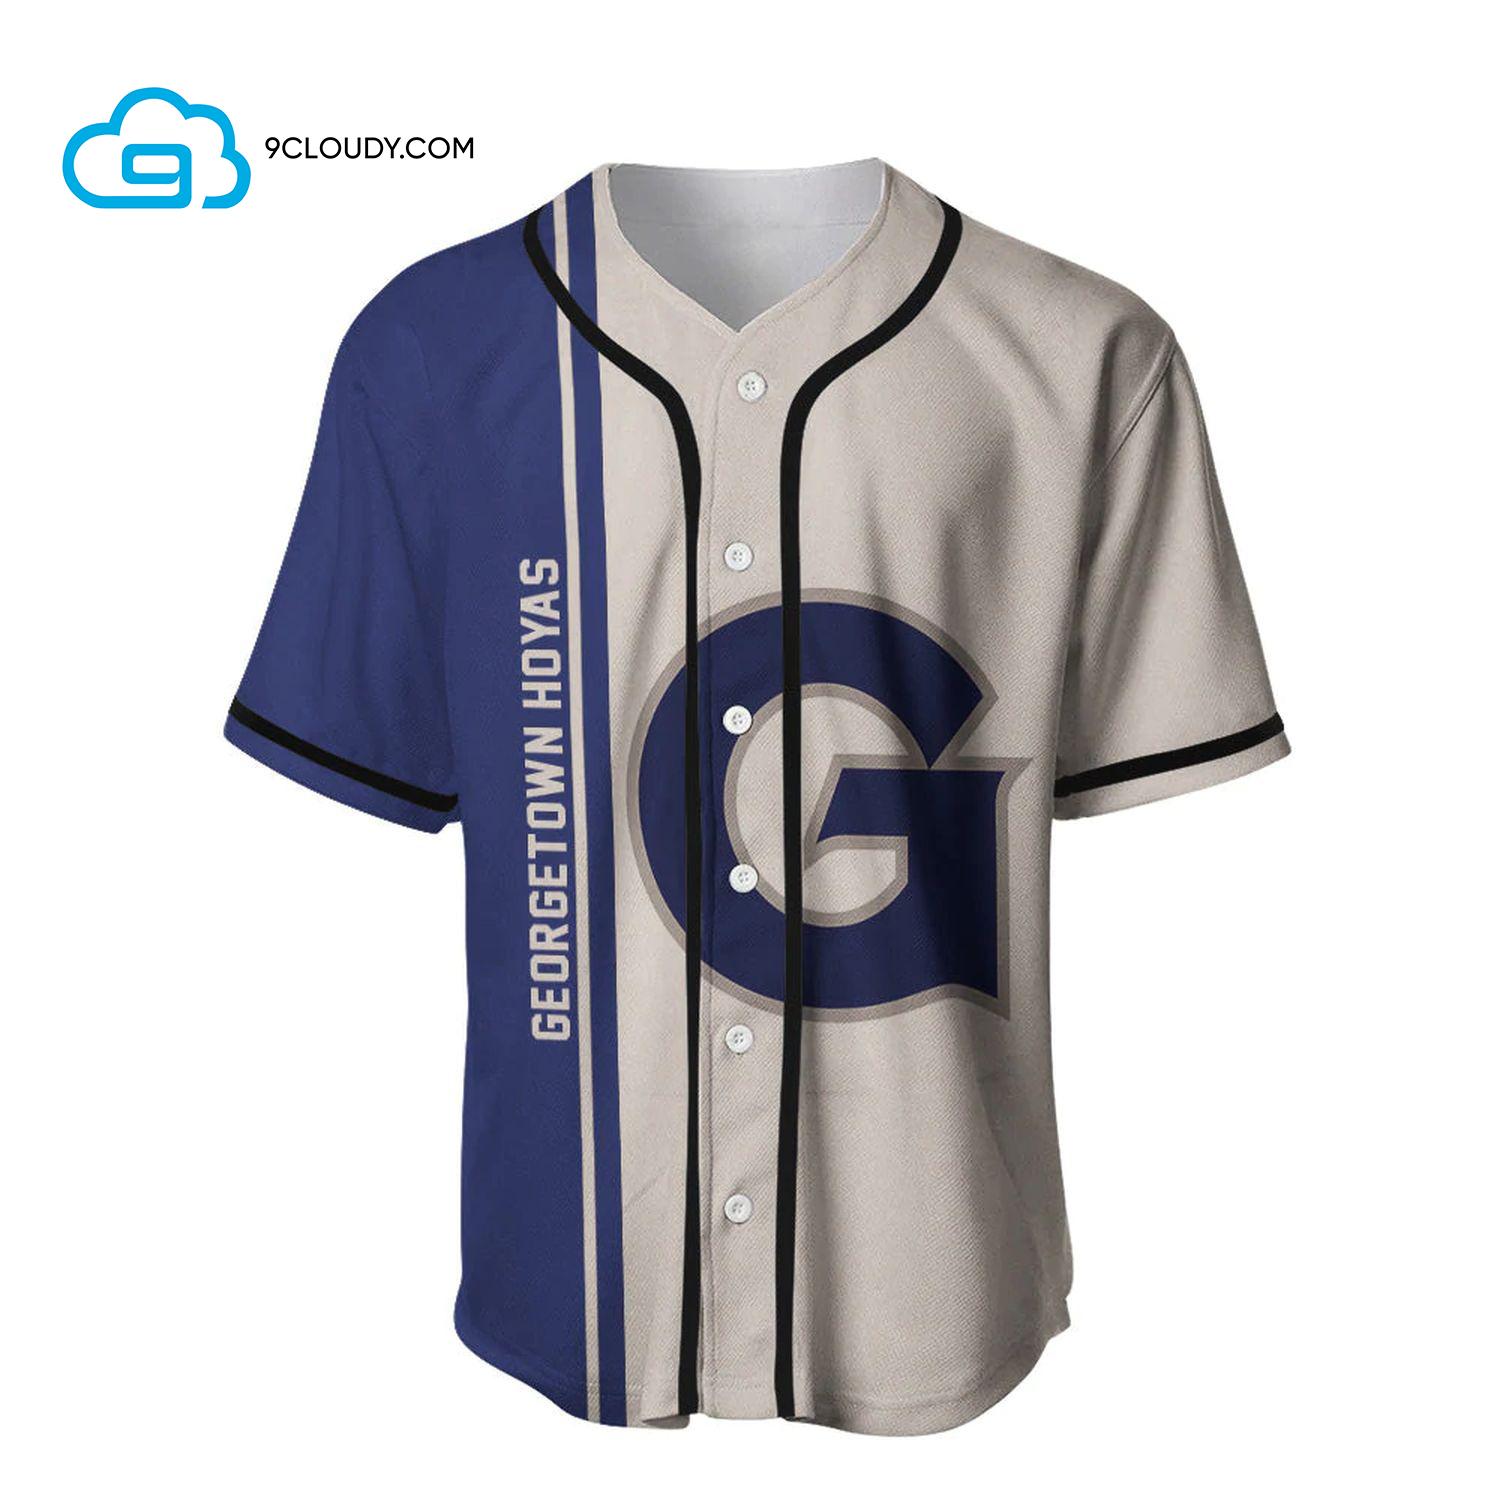 Georgetown Hoyas Full Printing Baseball Jersey